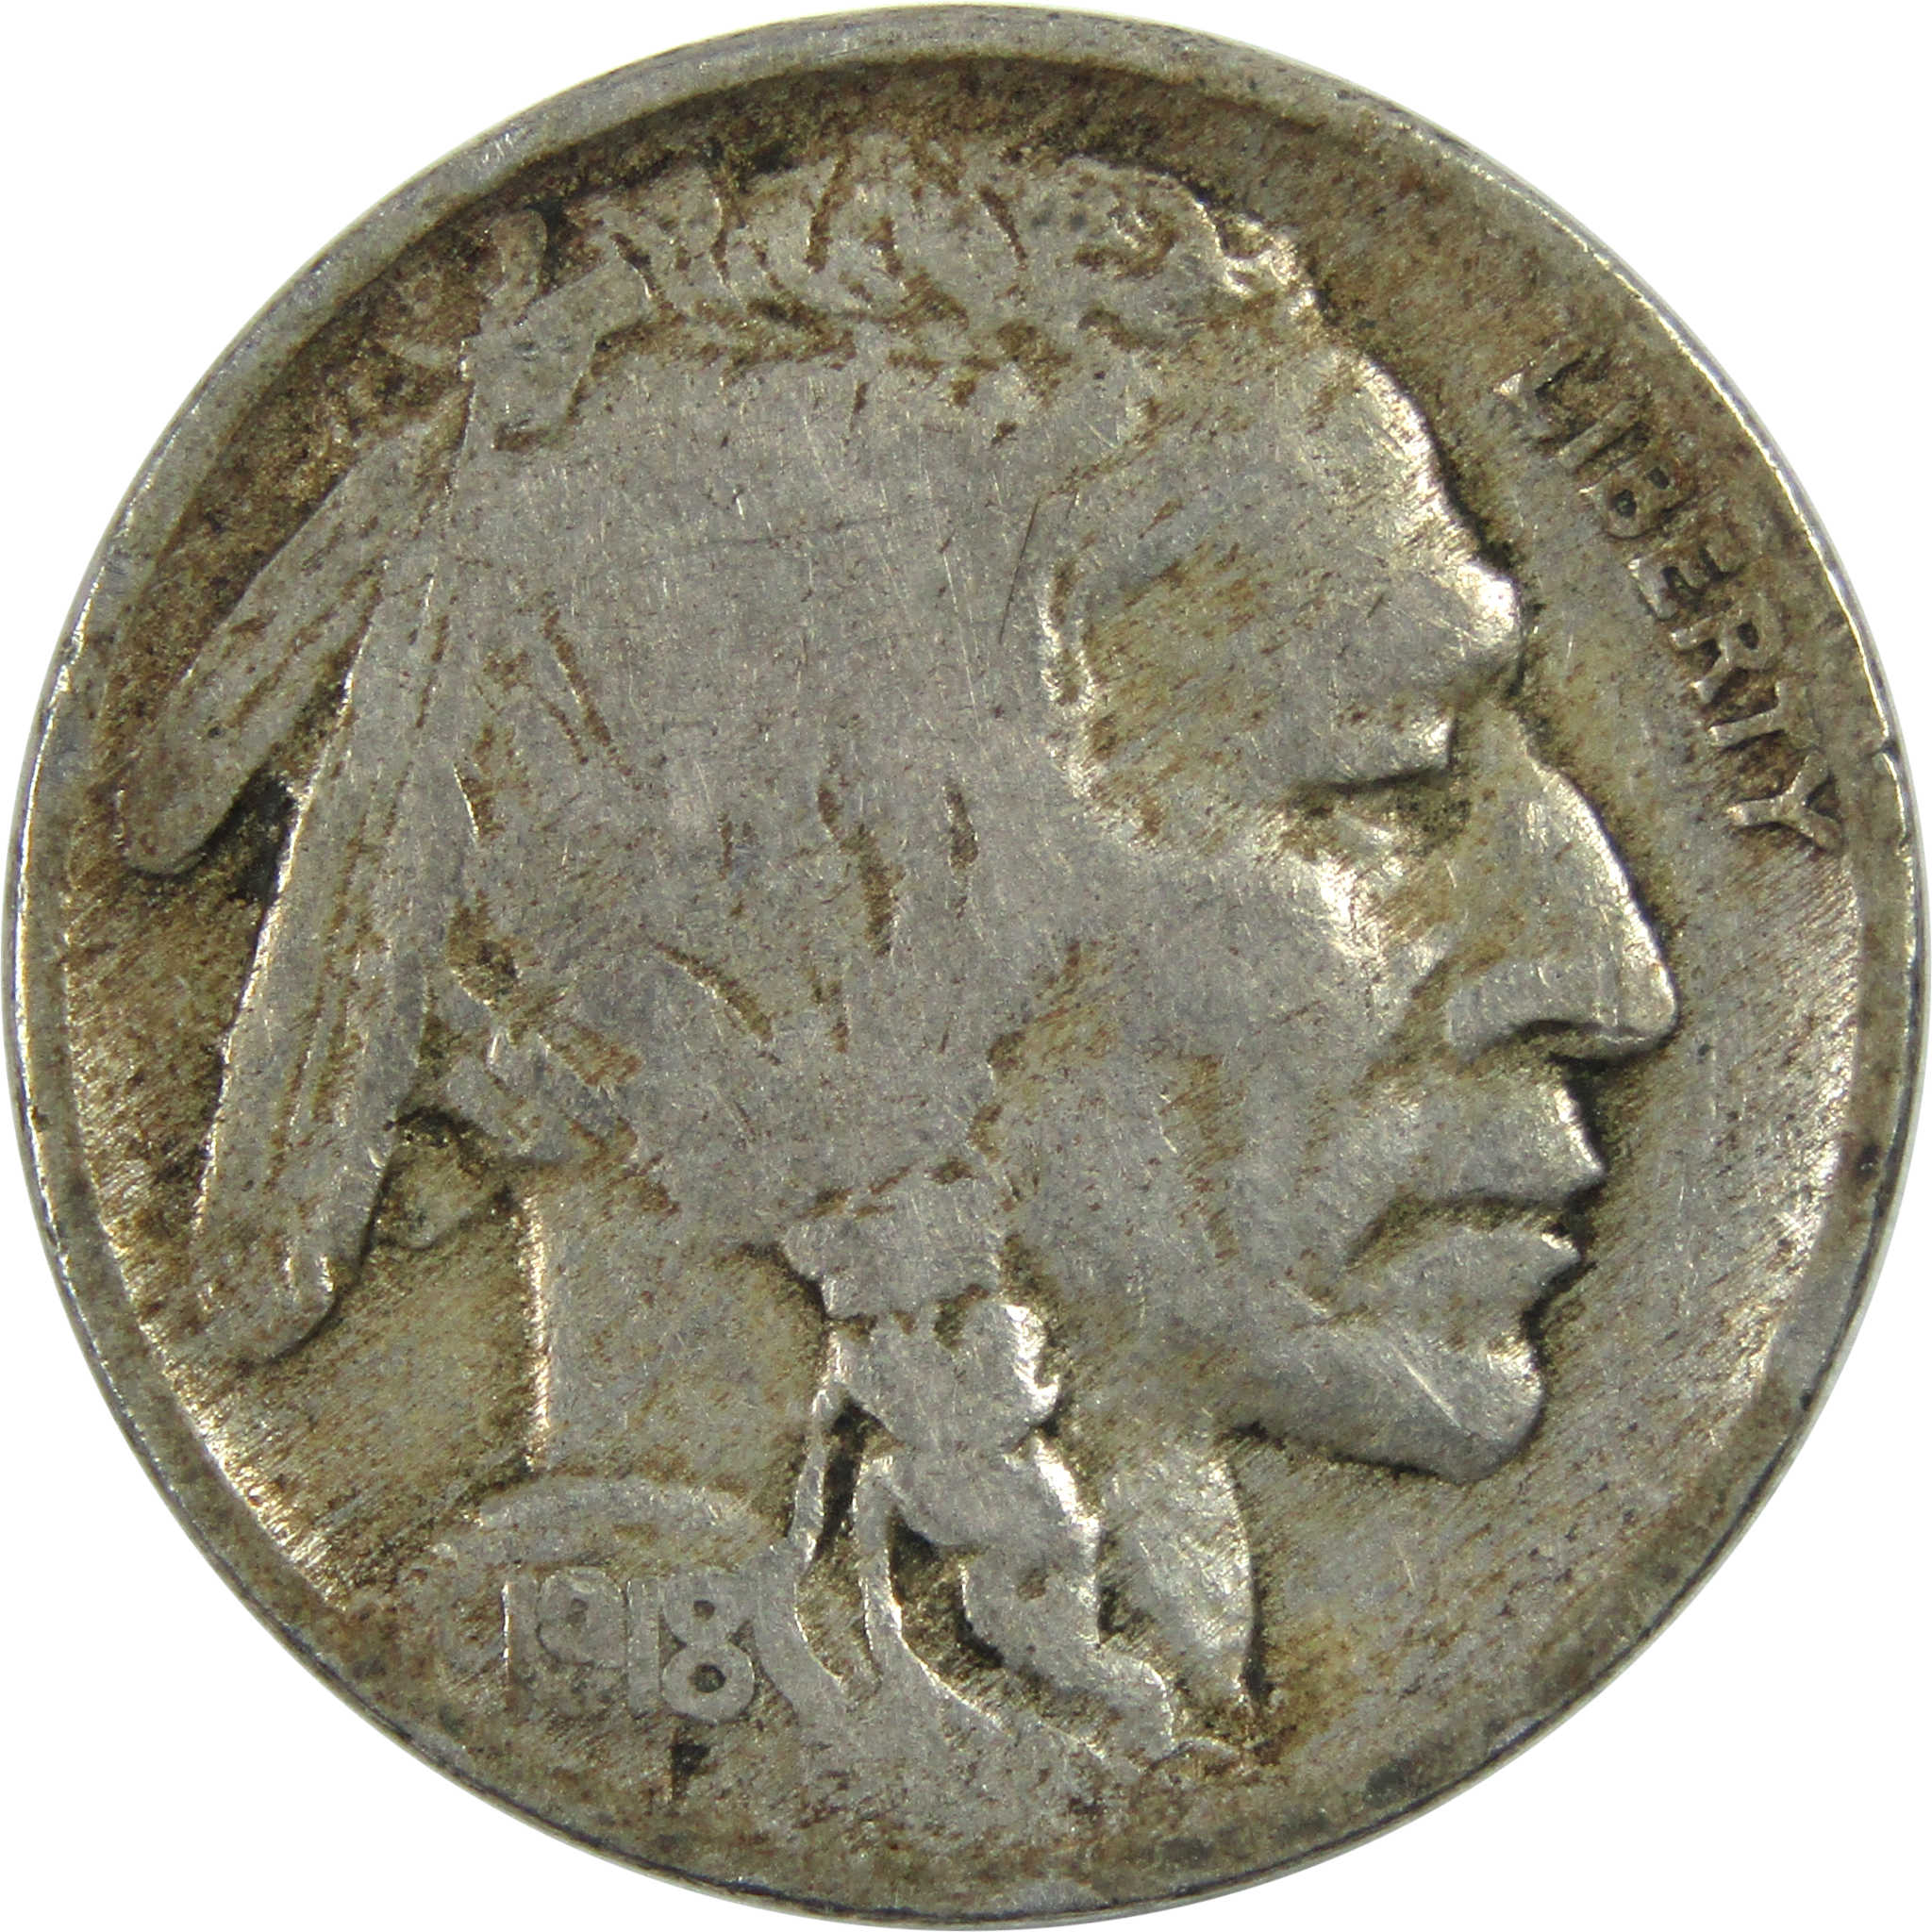 1918 Indian Head Buffalo Nickel VG Very Good 5c Coin SKU:I13005